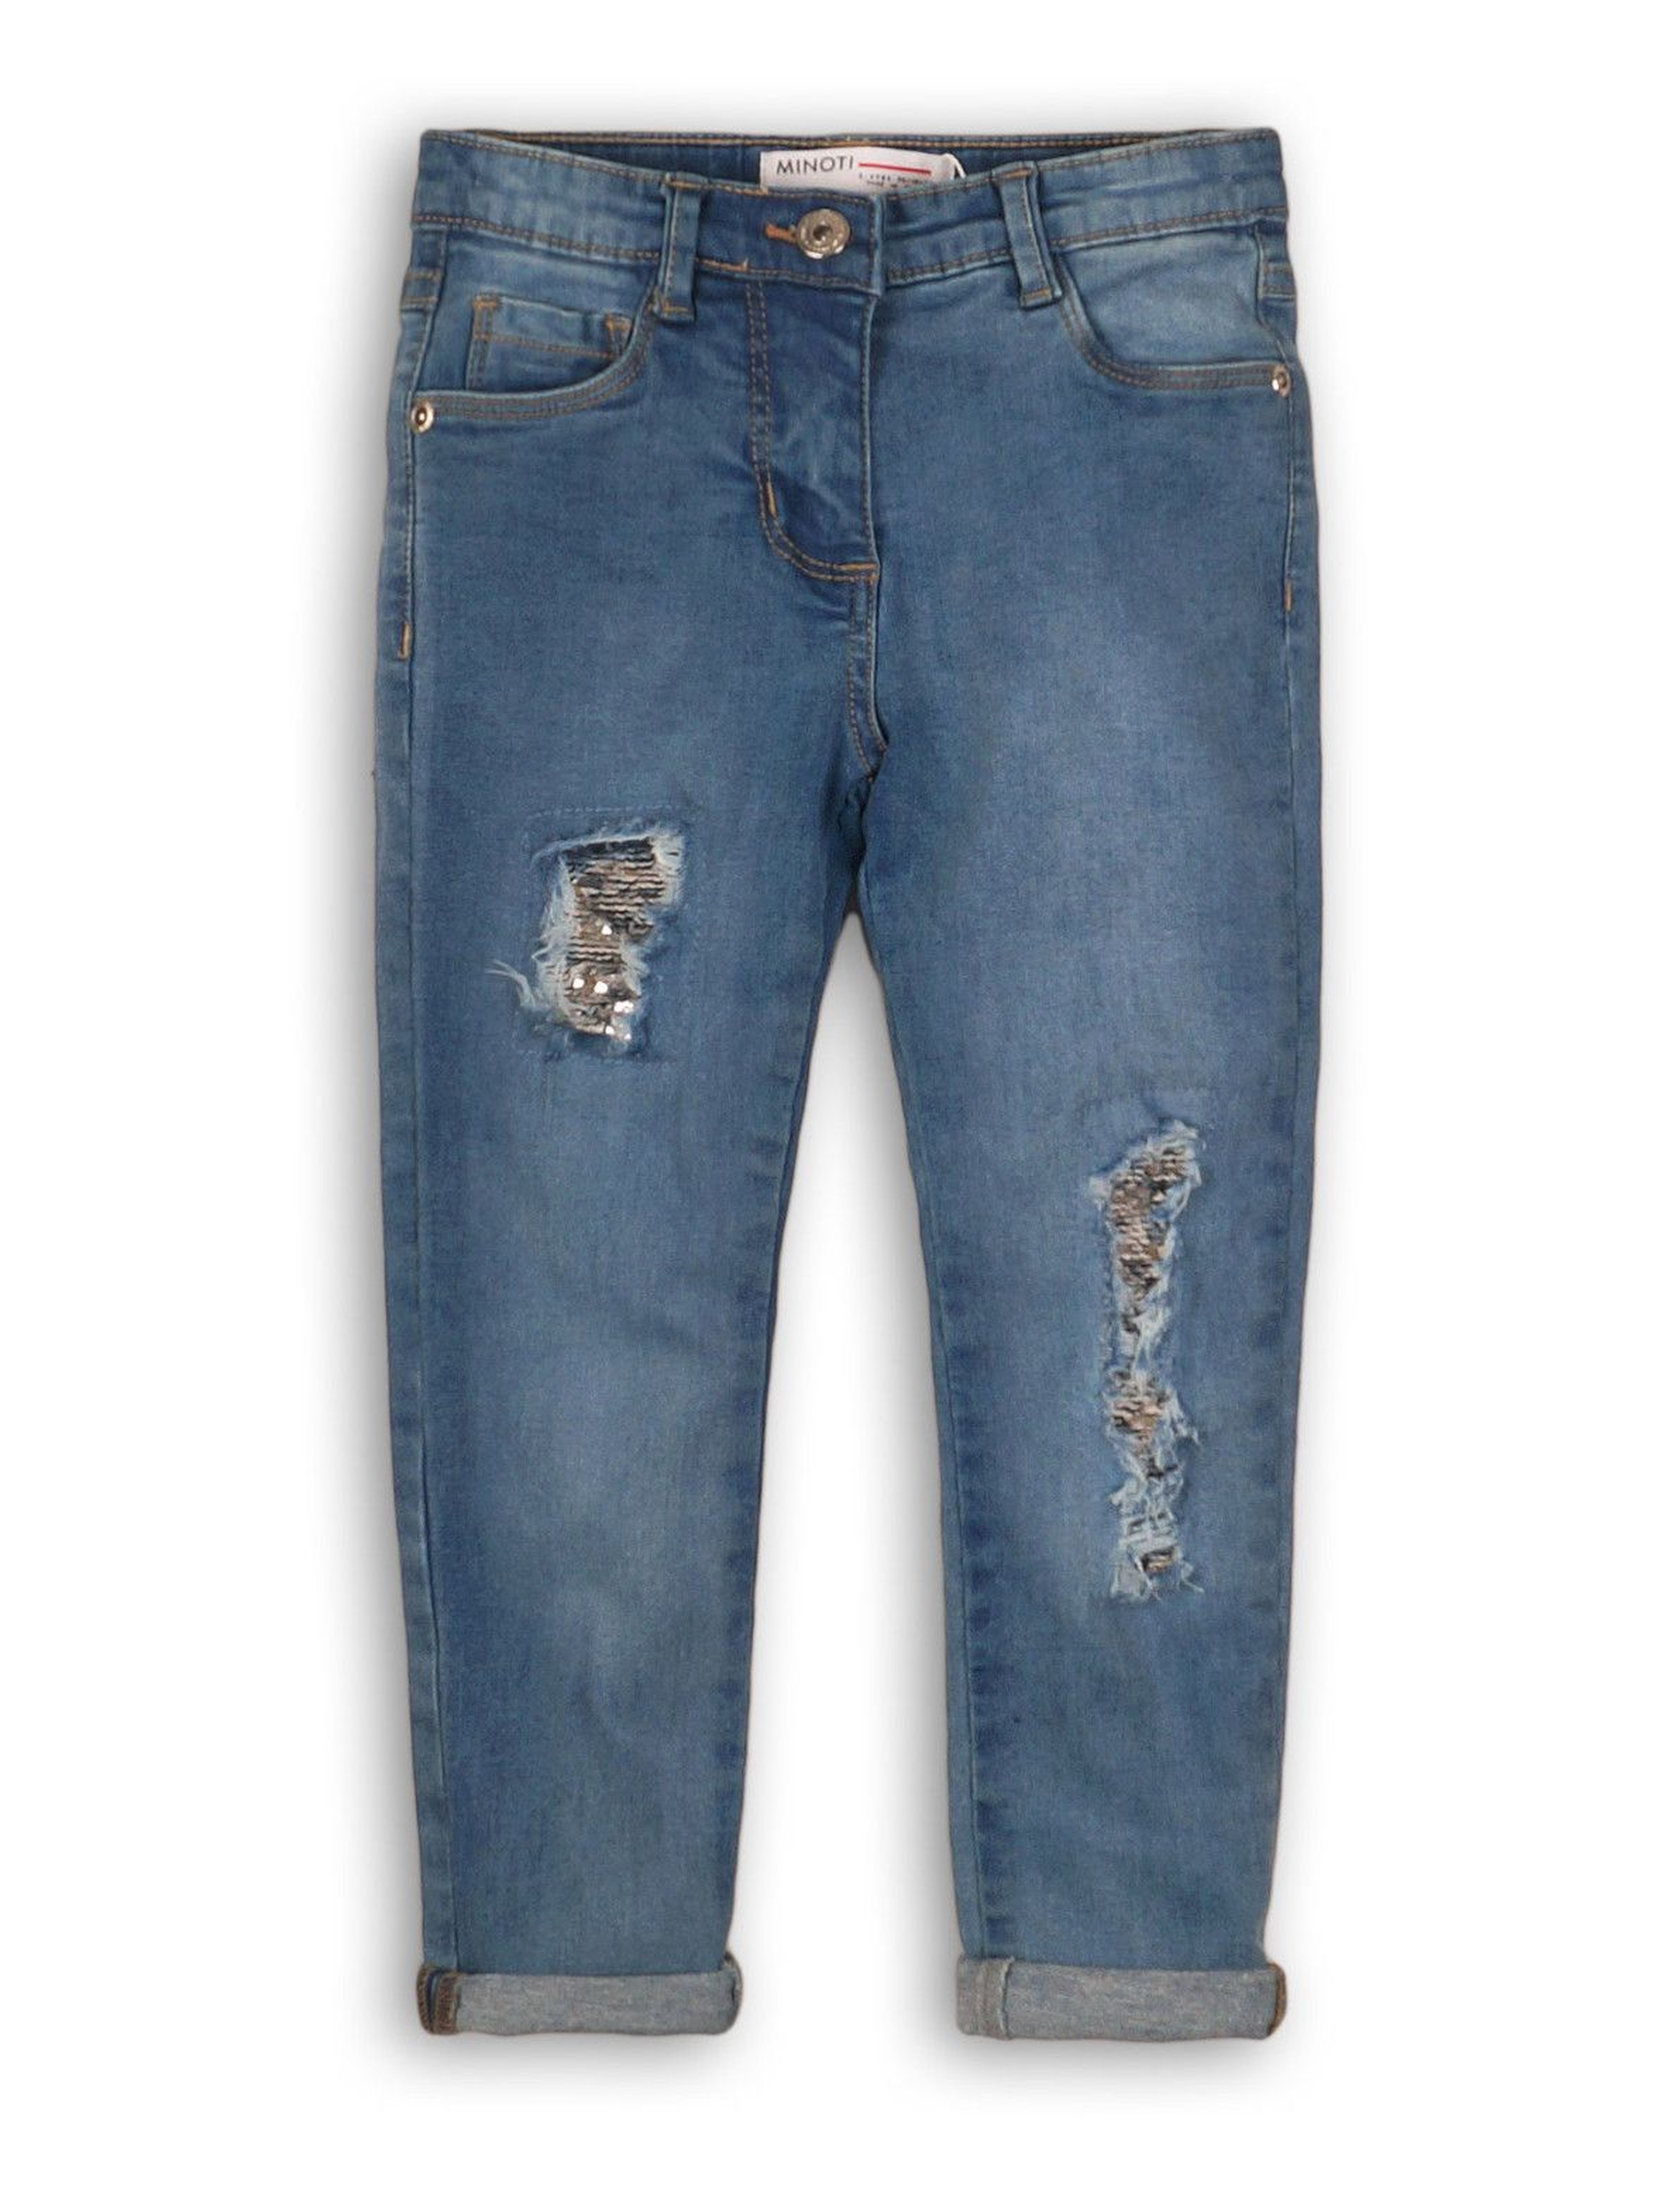 Spodnie dziewczęce jeansowe z cekinowymi łatami